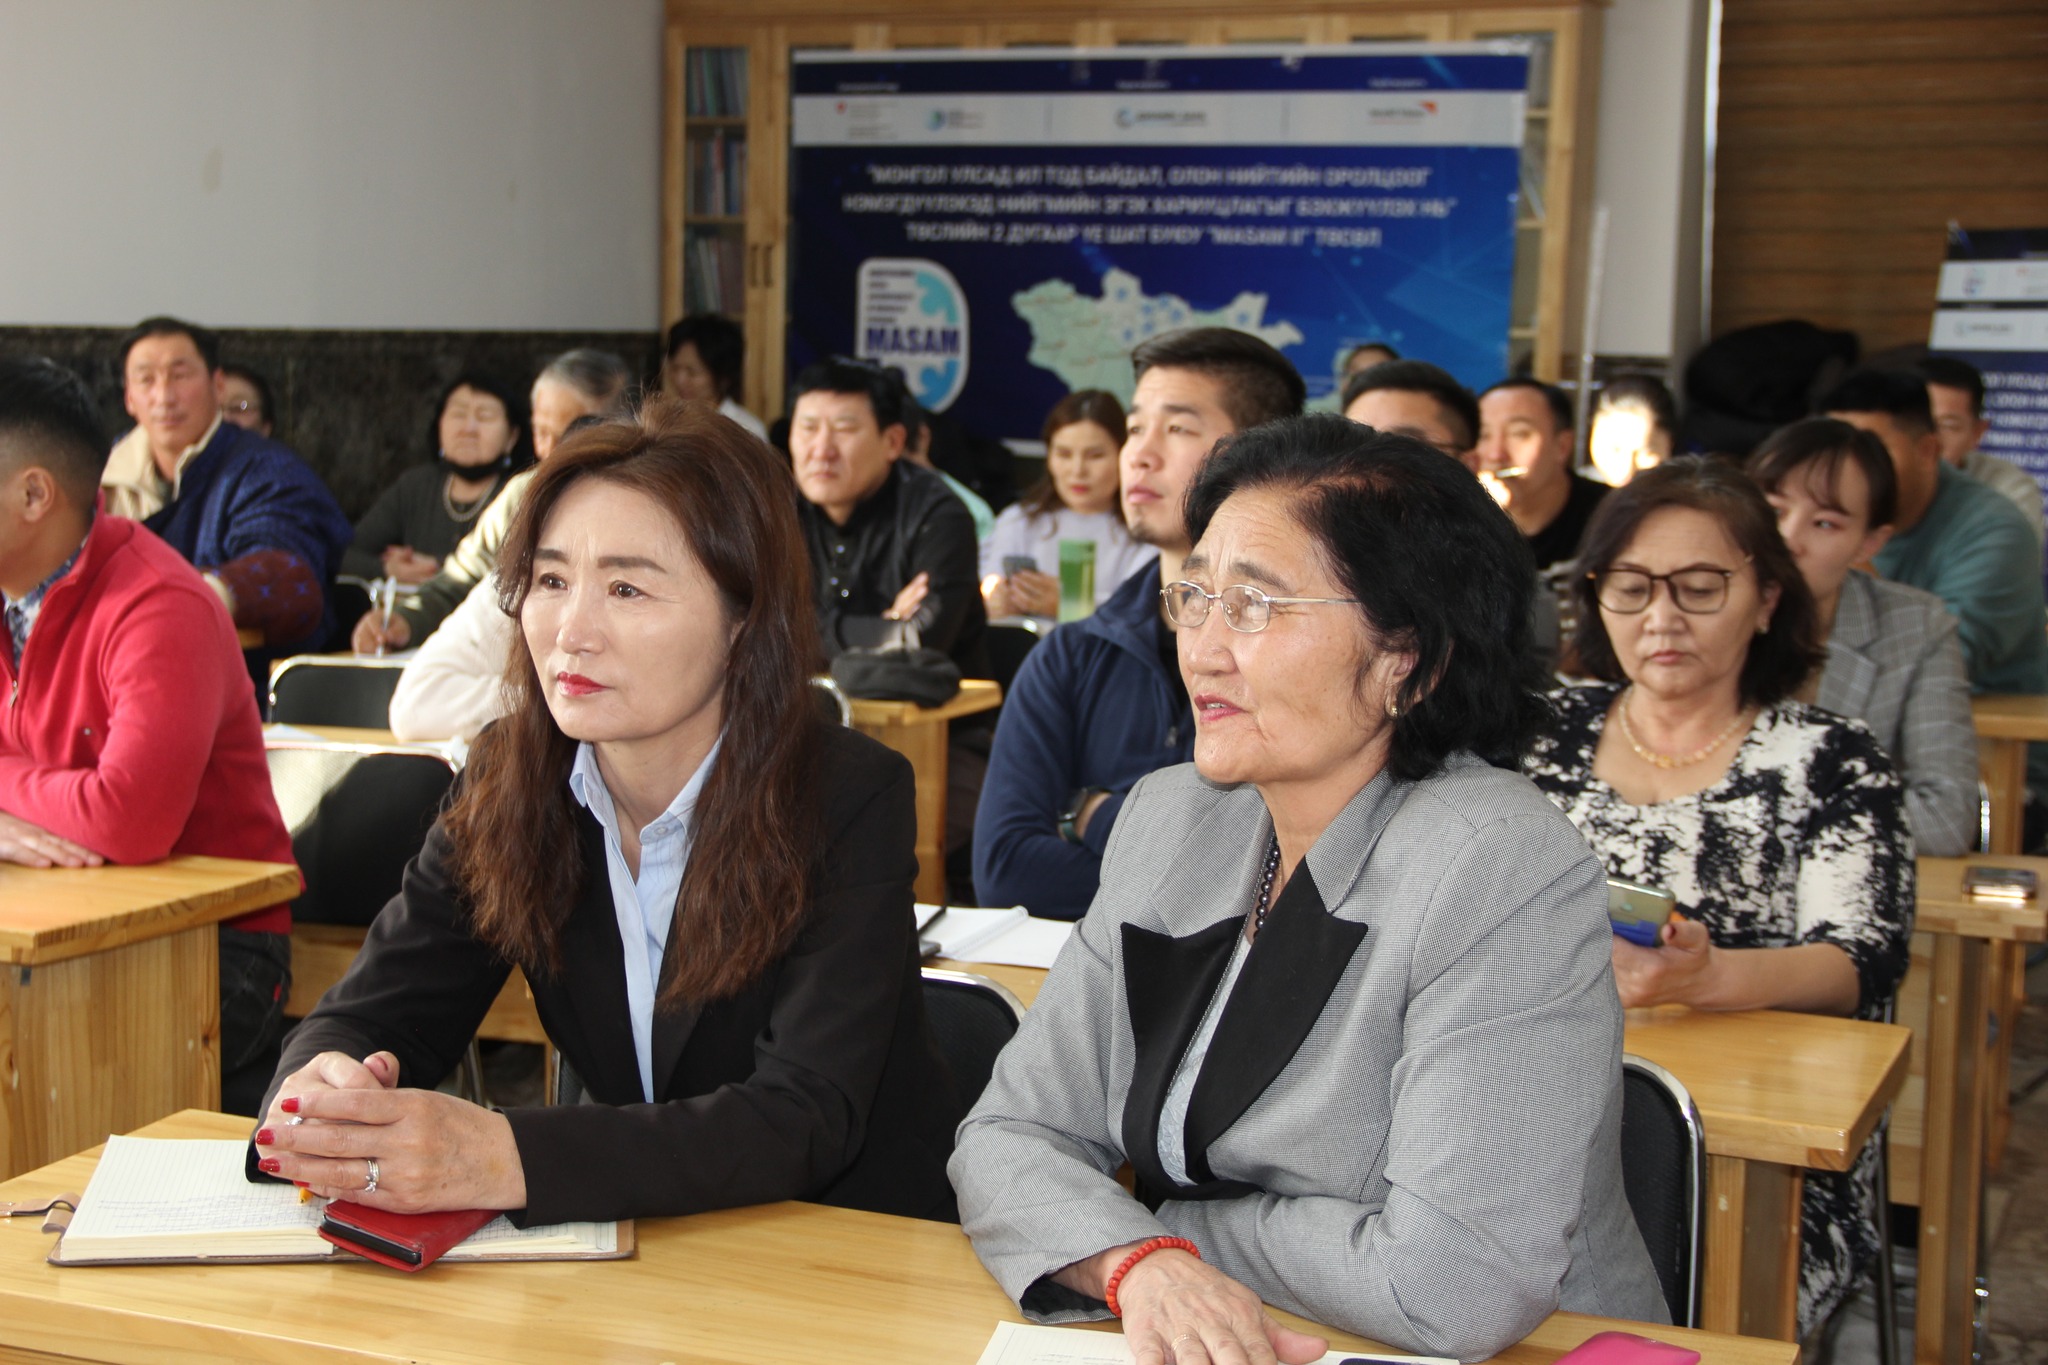 Дэлхийн зөн Монгол ОУБ-ын МАSAM II төслийн баг “Төсвийн үйл явцад нийгмийн эгэх хариуцлагын ойлголт, арга хэрэгслийг ашиглах нь” 4 модуль сургалтыг 2023 оны 1-р сарын 10-15-ны өдрүүдэд Баянхонгор, Дунд-Говь болон Өмнөговь аймгийн төр, иргэд болон иргэний 